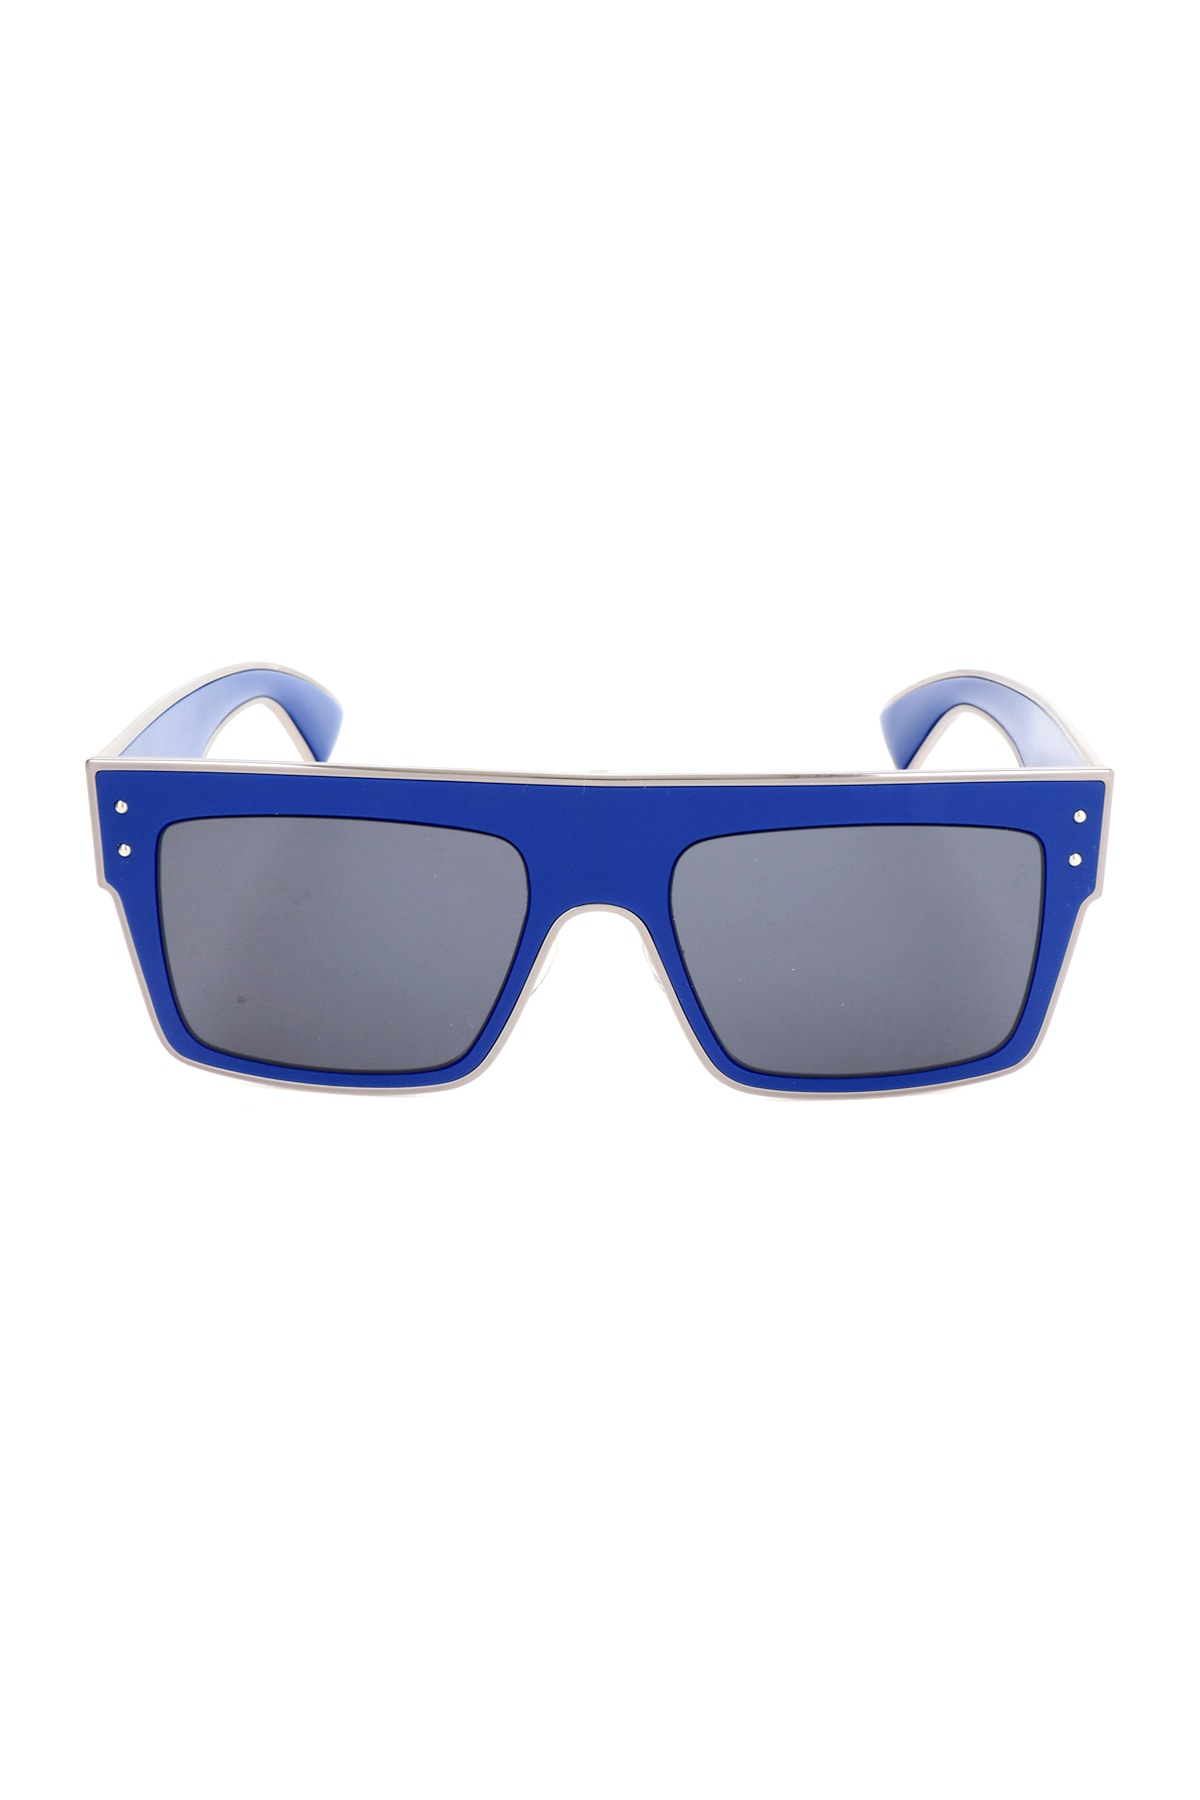 Moschino Sonnenbrille Dunkelblau Unifarben